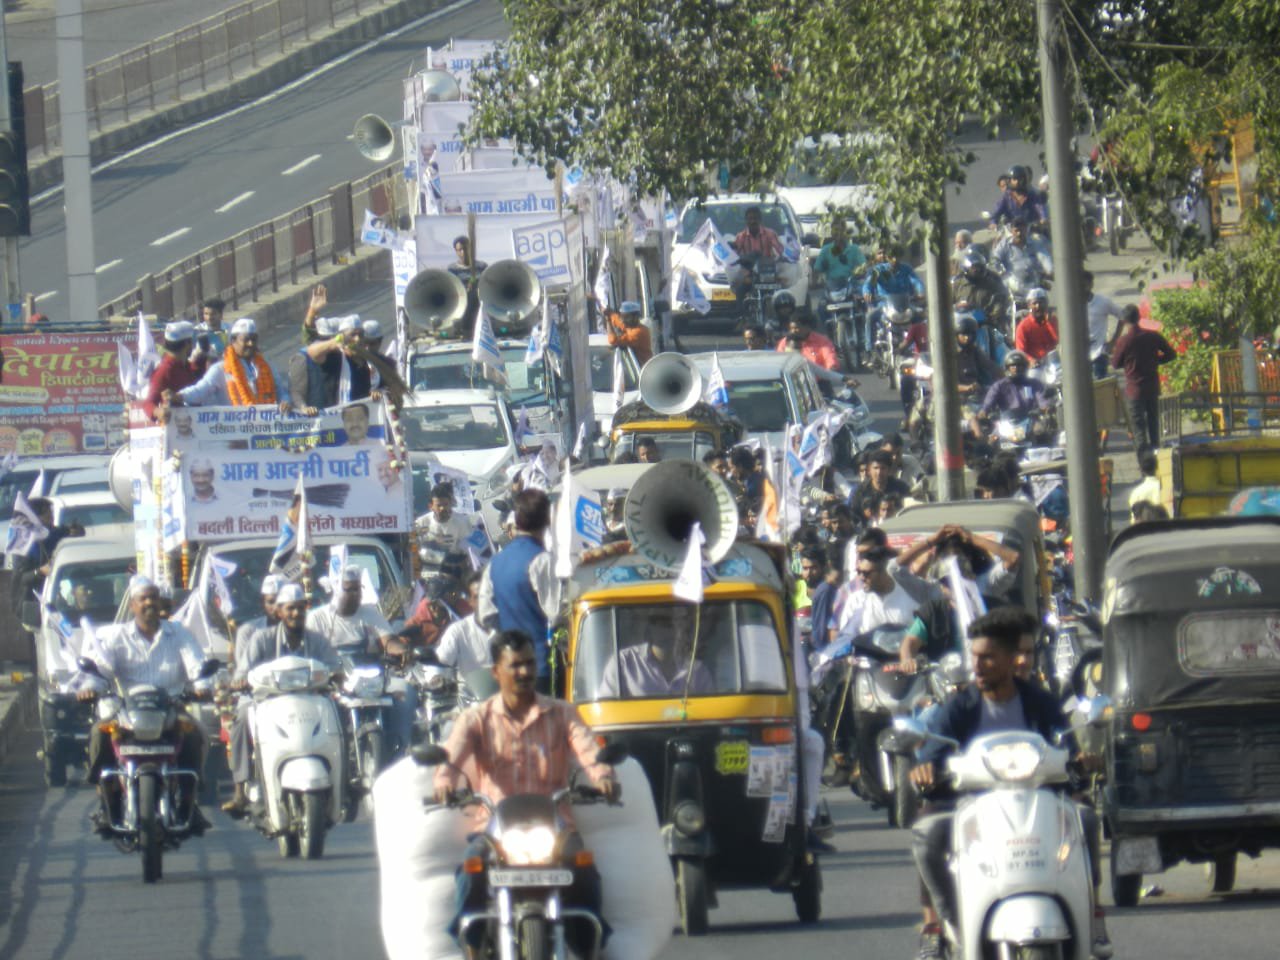 चुनाव प्रचार के आखिरी दिन आम आदमी पार्टी ने किया अनोखा रोड शो, दिल्ली सरकार के कार्यों के झांकियों के साथ प्रदेश की शिवराज सरकार पर किया हमला, प्रदेशाध्यक्ष आलोक अग्रवाल के नेतृत्व में शहर में निकला सैकड़ों वाहनों का काफिला | New India Times